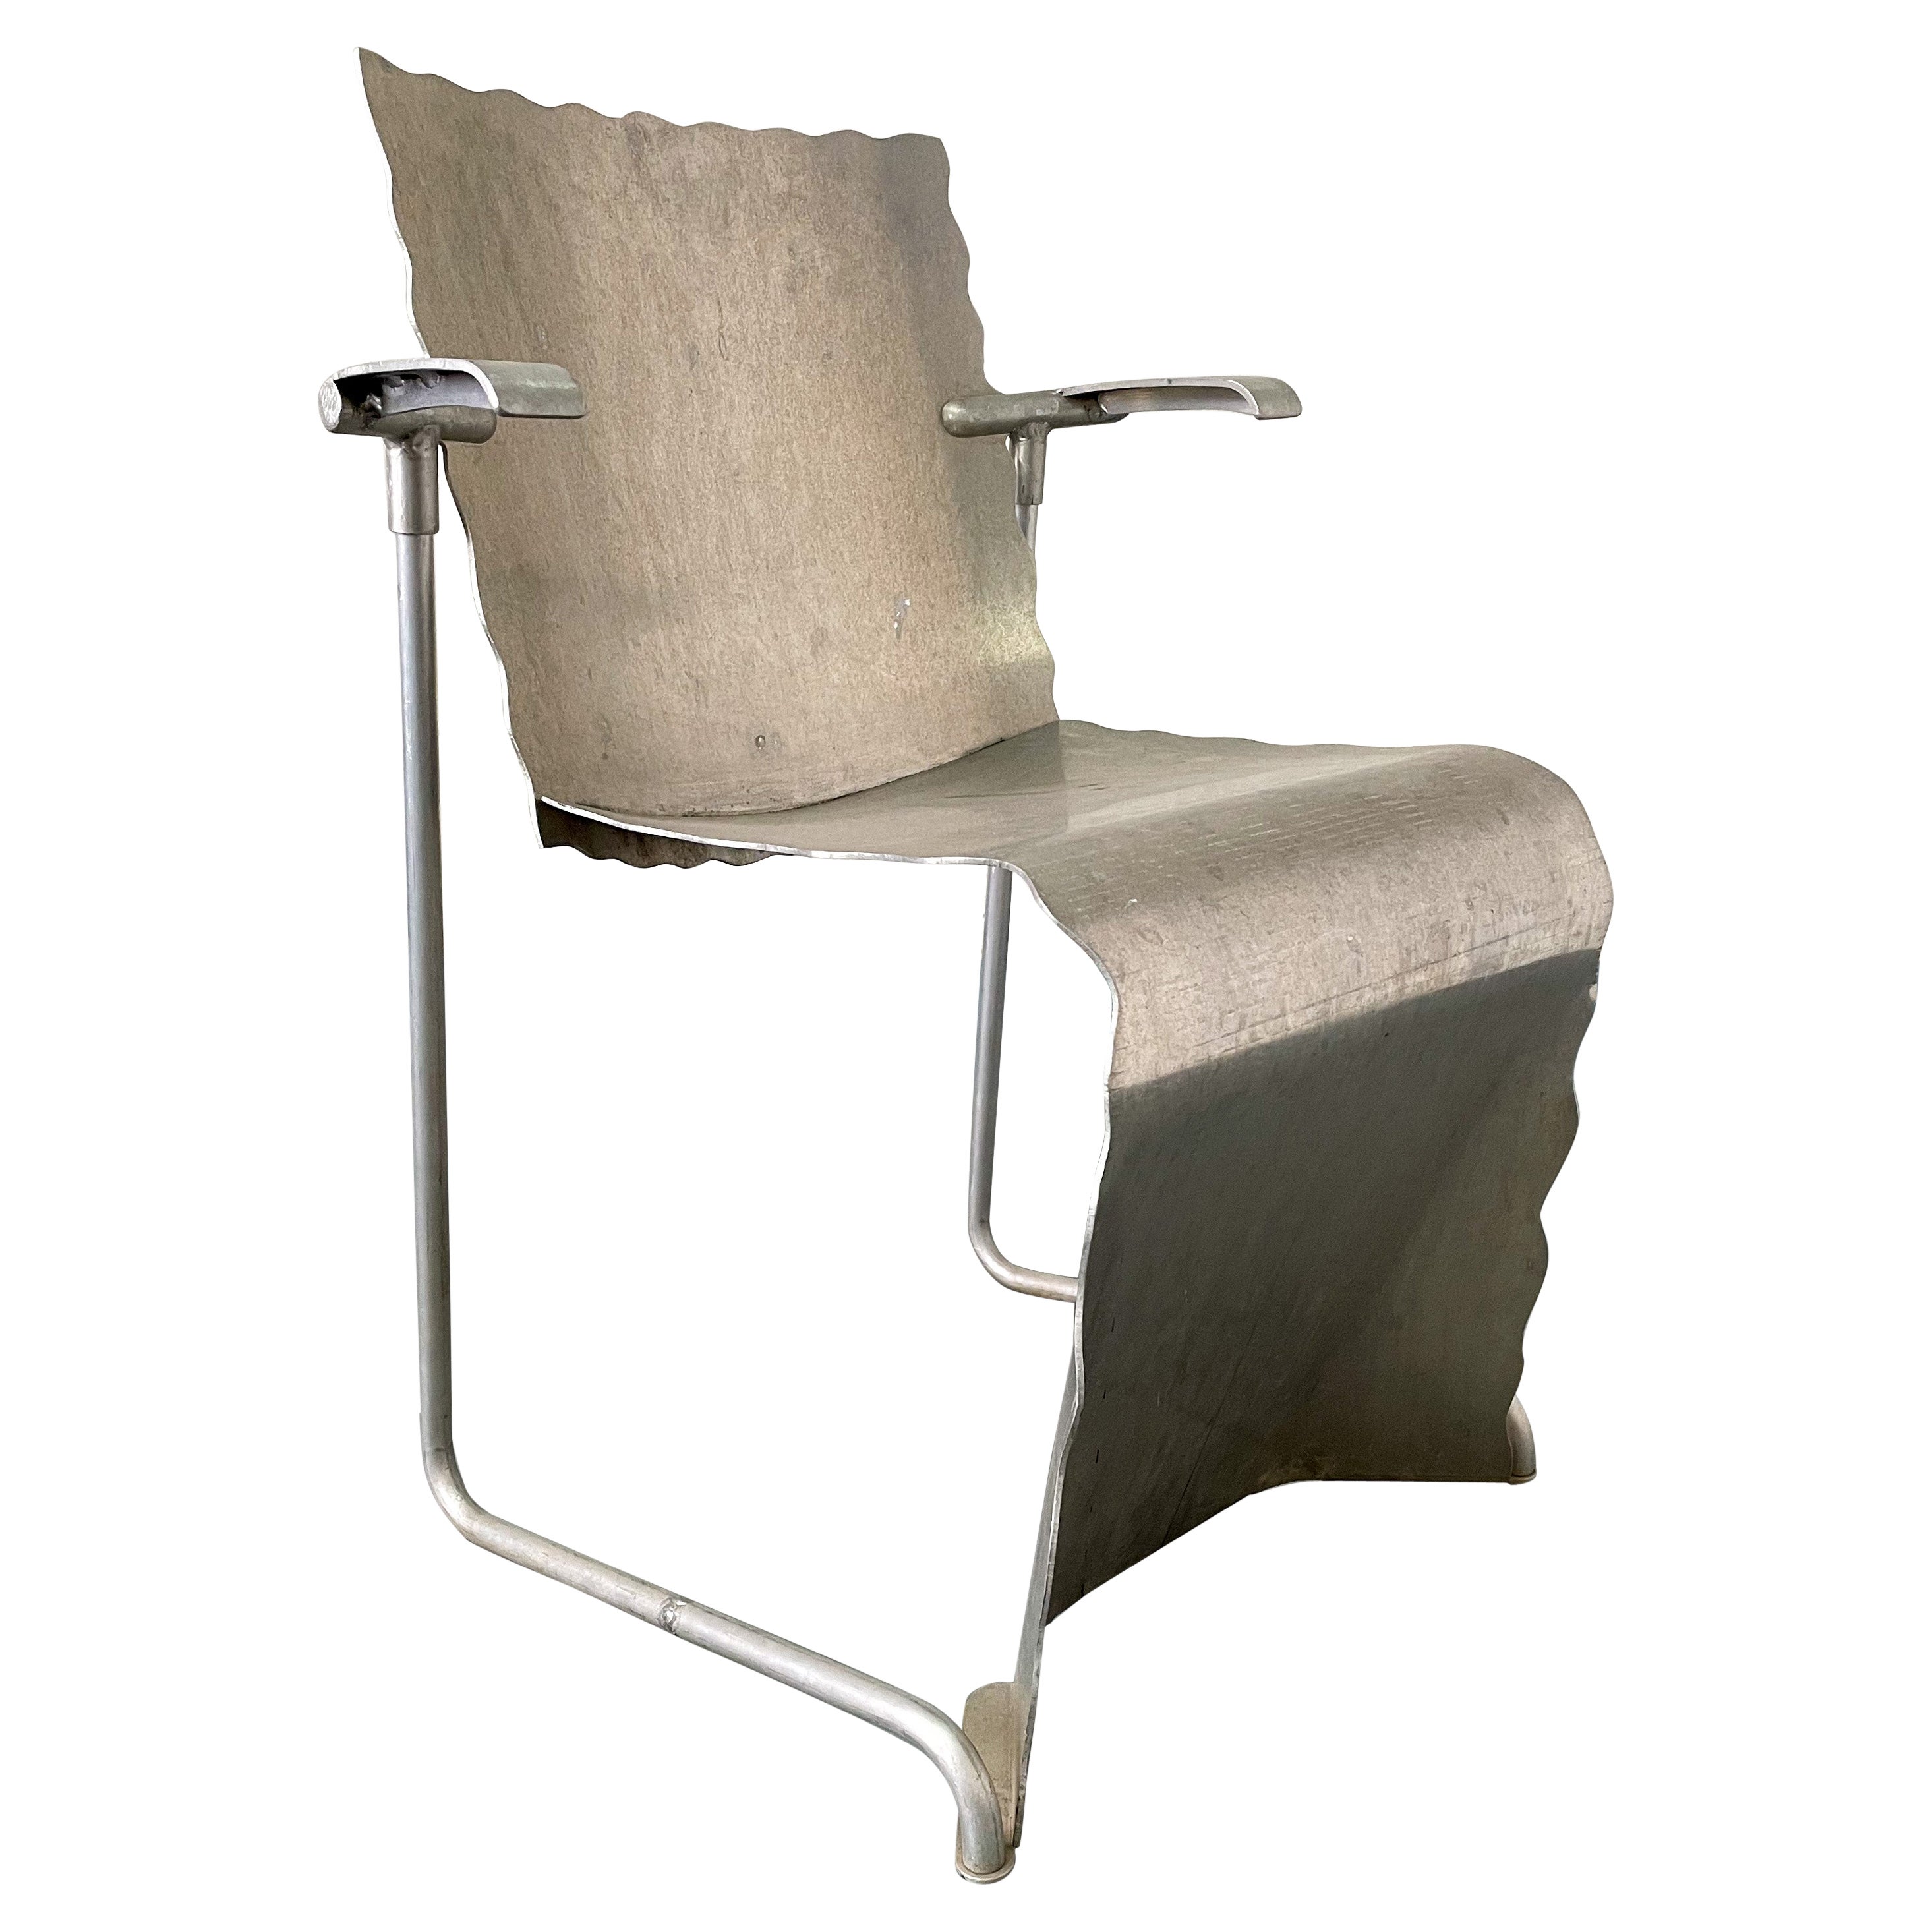 Richard Schultz Prototype de chaise empilable en aluminium #2 en vente